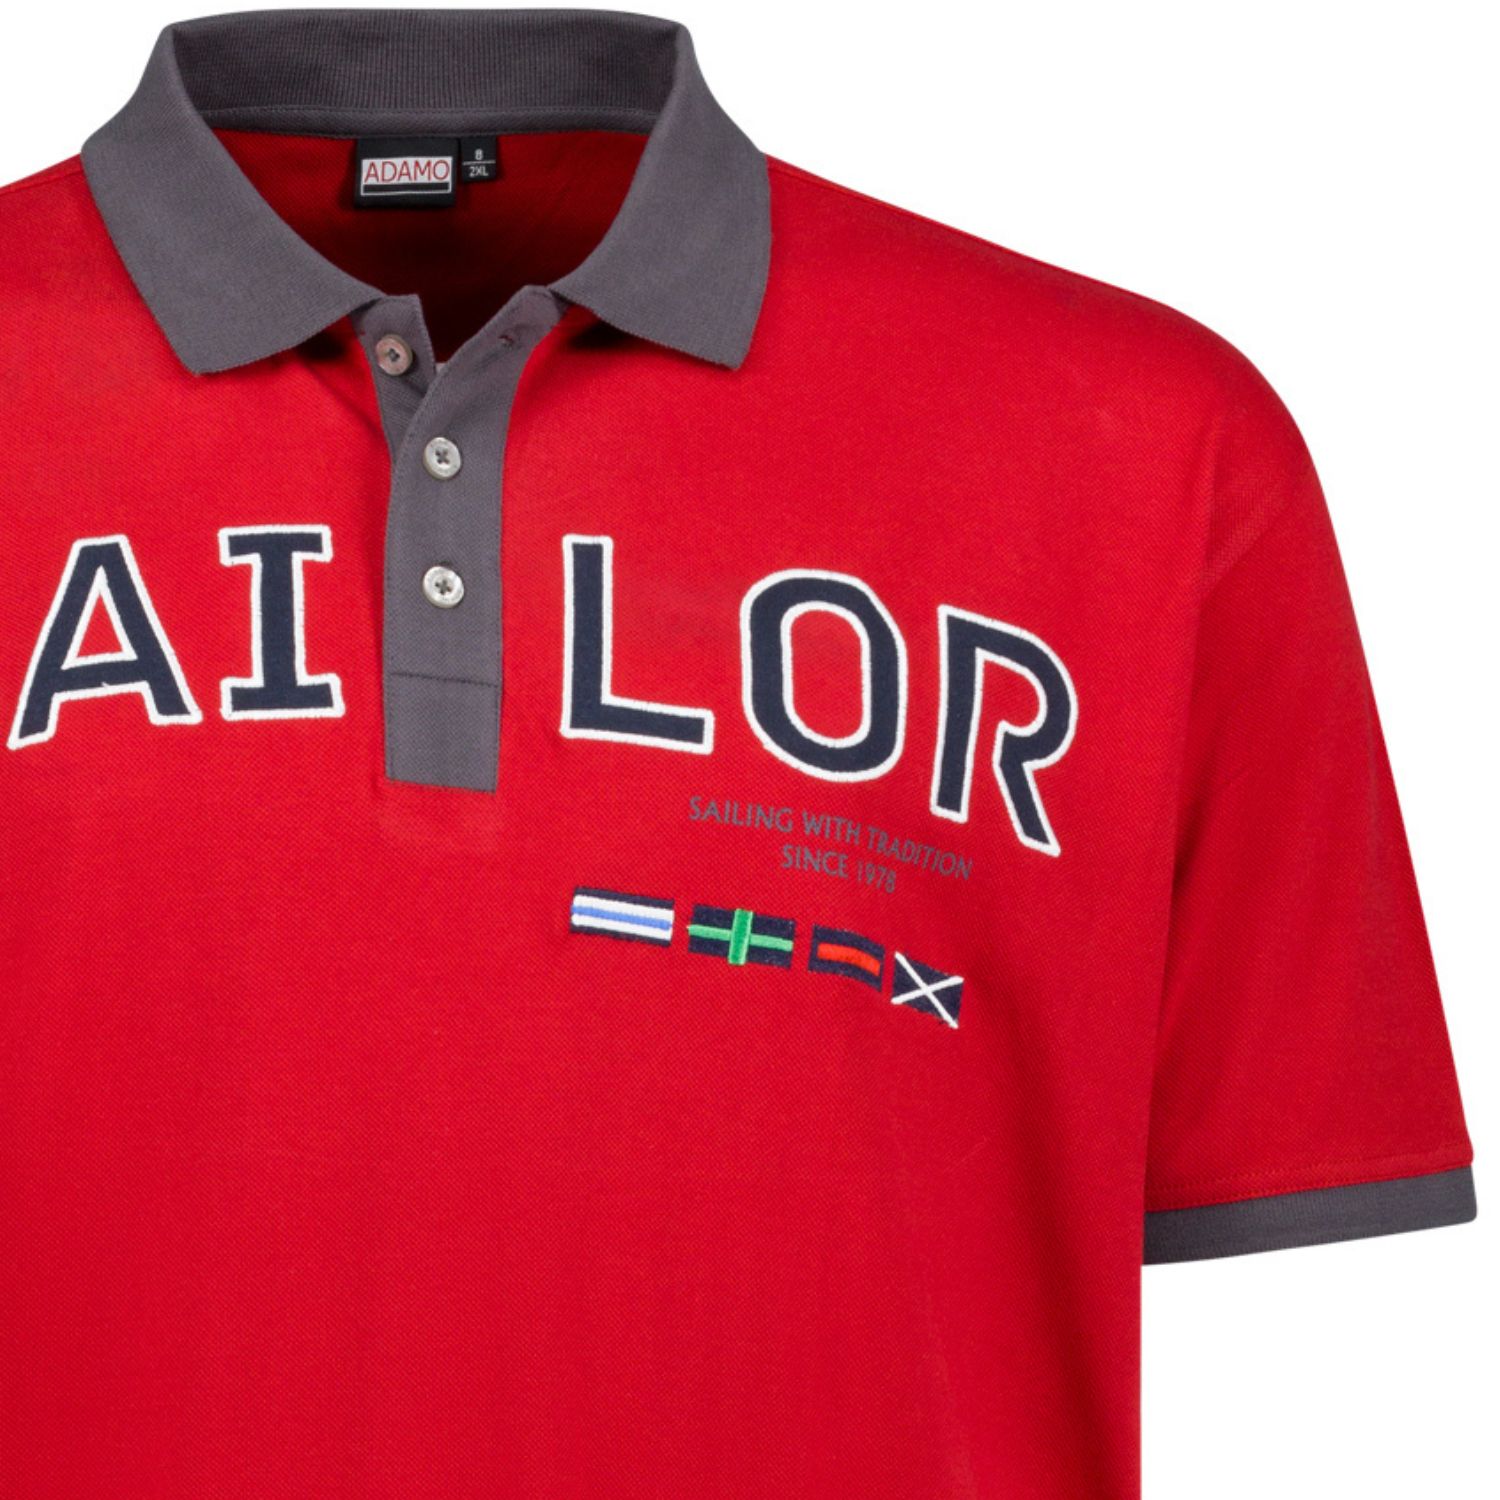 Pique Polohemd kurzärmlig mit Print und Stickerei Herren von ADAMO Serie SAILOR in rot bis Übergröße 10XL Regular Fit